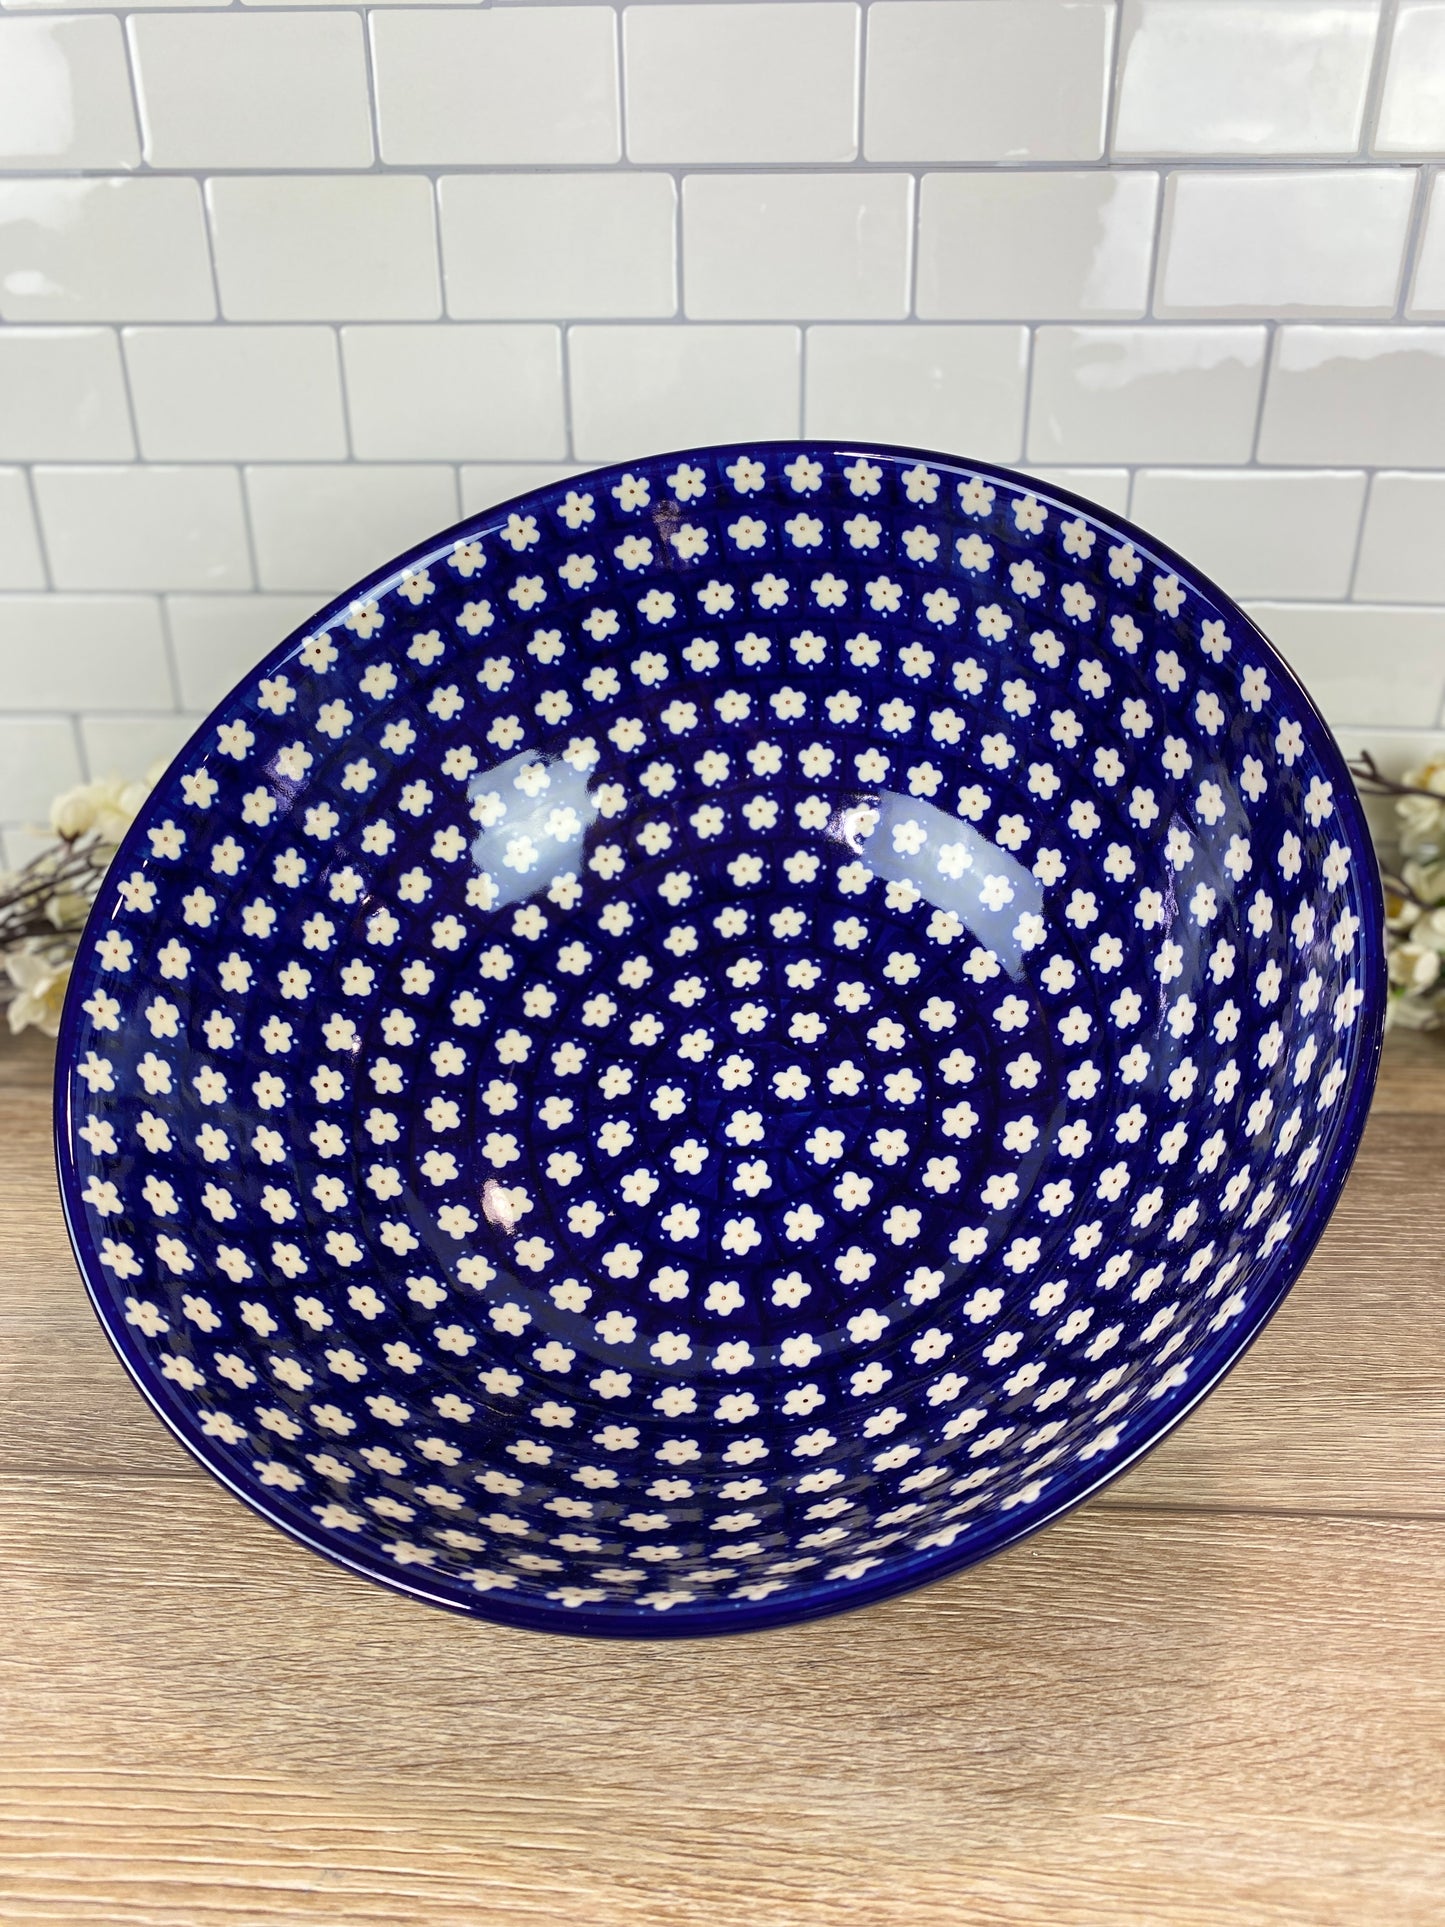 XL Kitchen Bowl - Shape 154 - Pattern 247